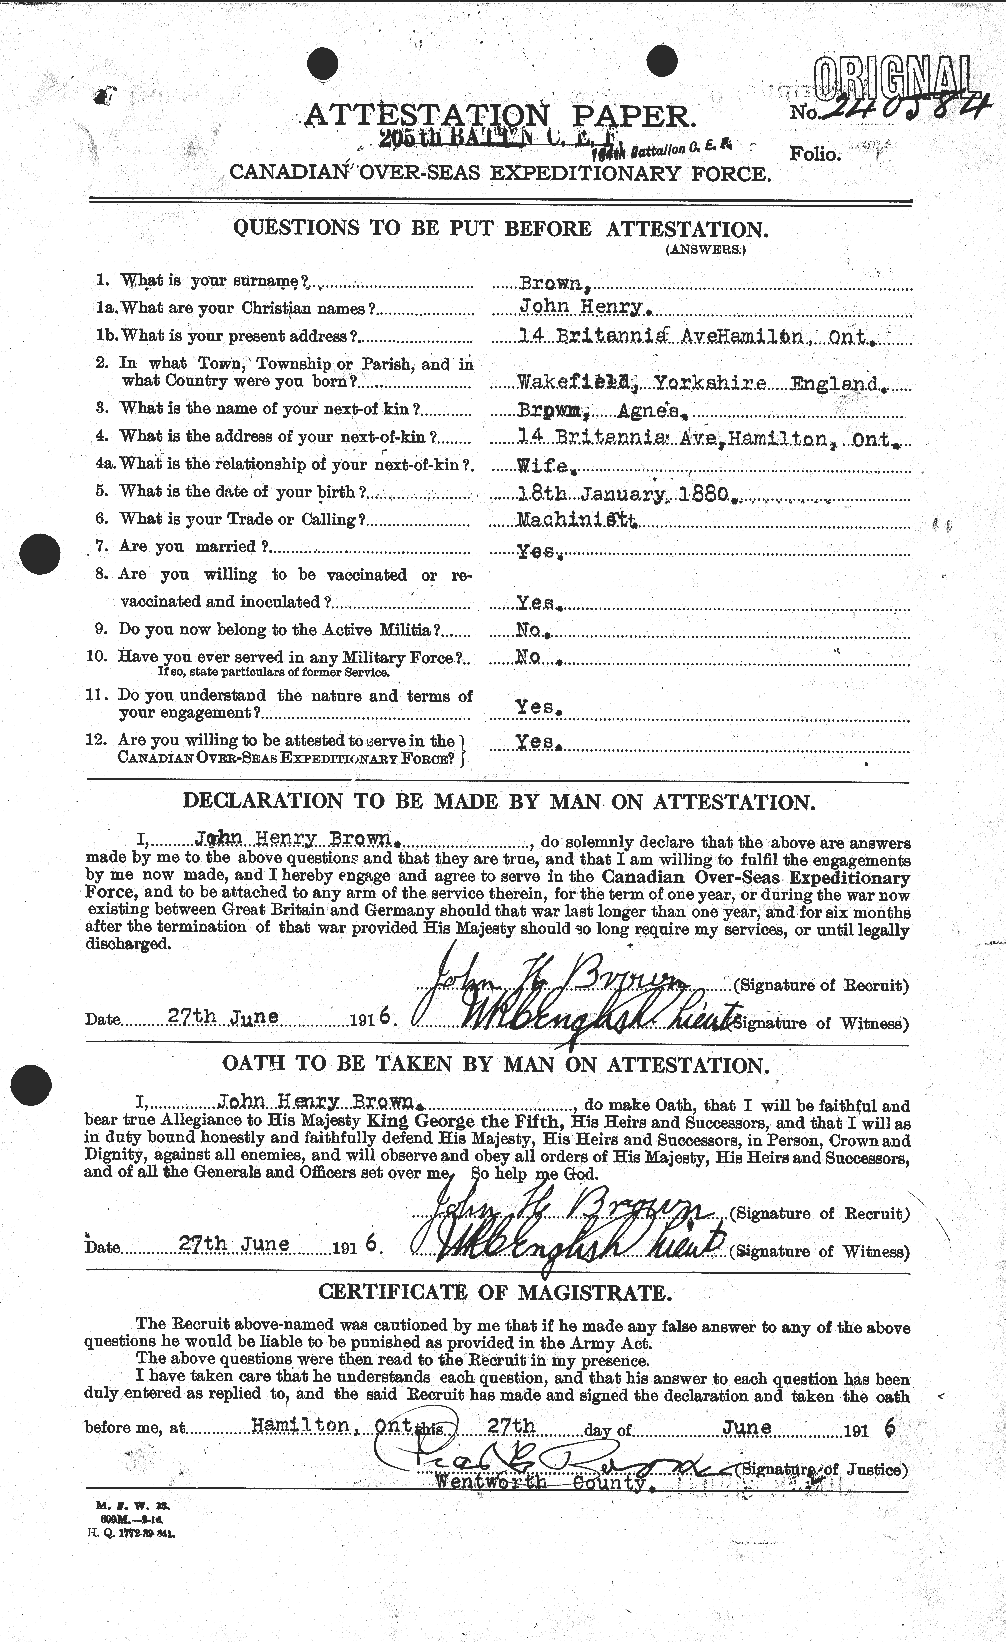 Dossiers du Personnel de la Première Guerre mondiale - CEC 264618a